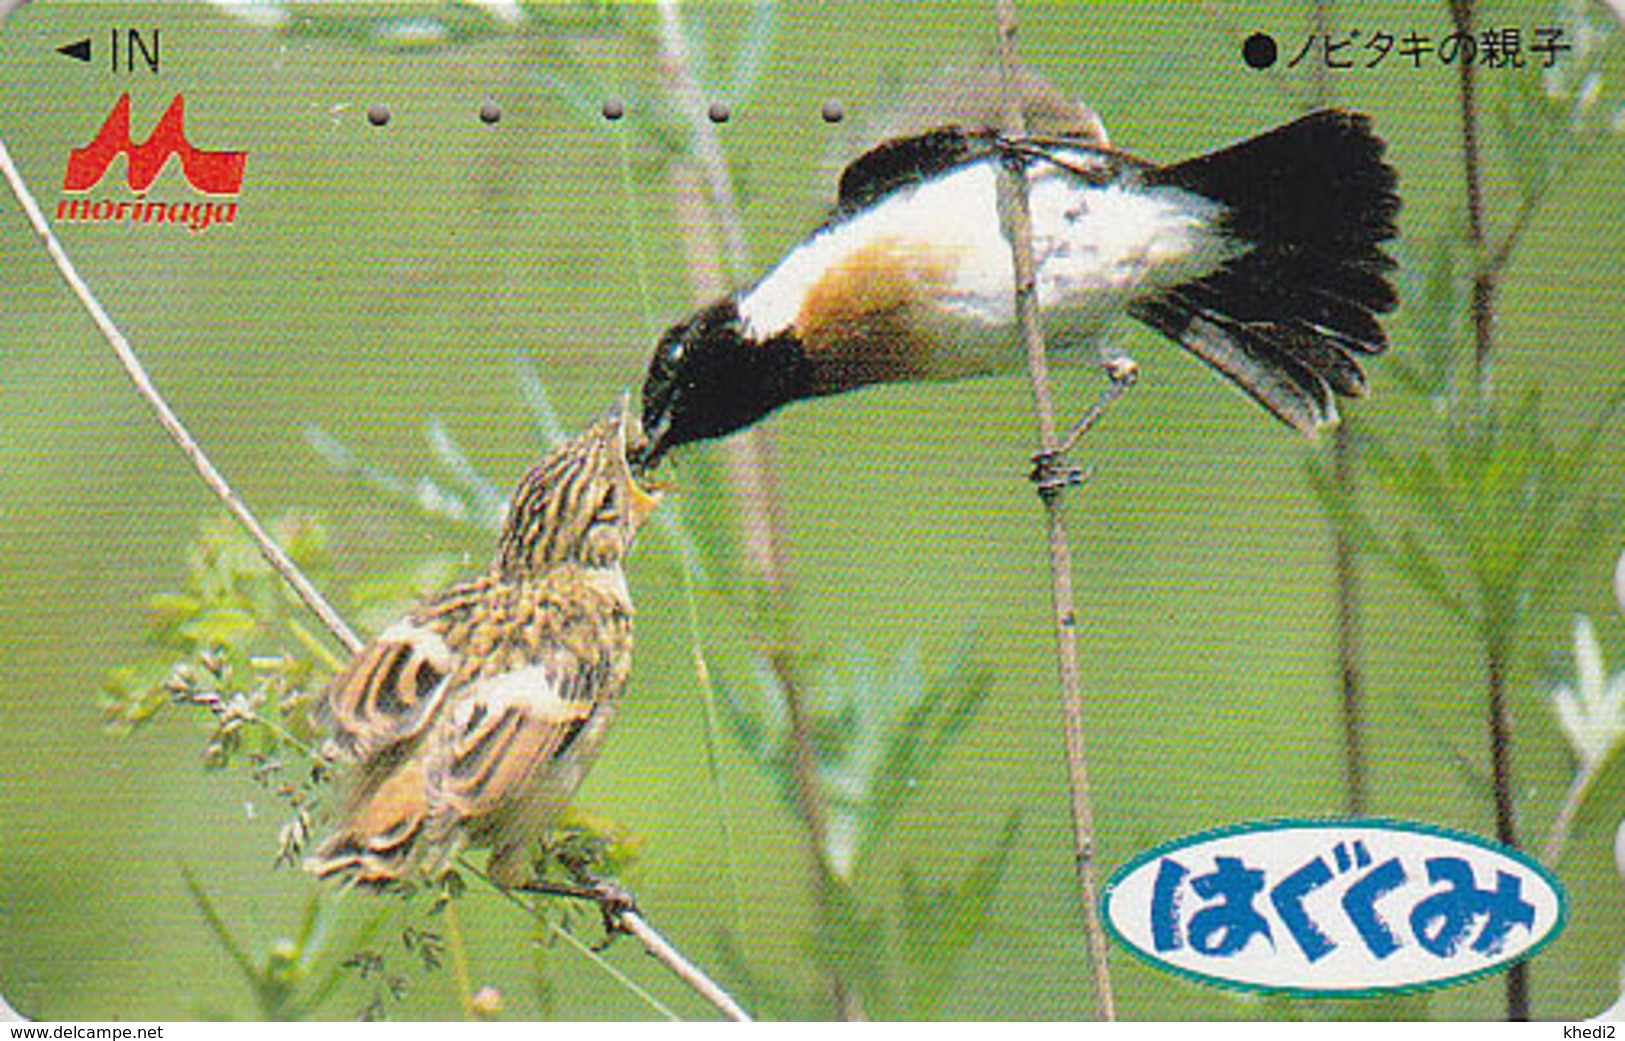 Télécarte Japon / 110-011 - Animal - OISEAU Au Nid - SONG BIRD Feeding Japan Phonecard - BE 4425 - Pájaros Cantores (Passeri)